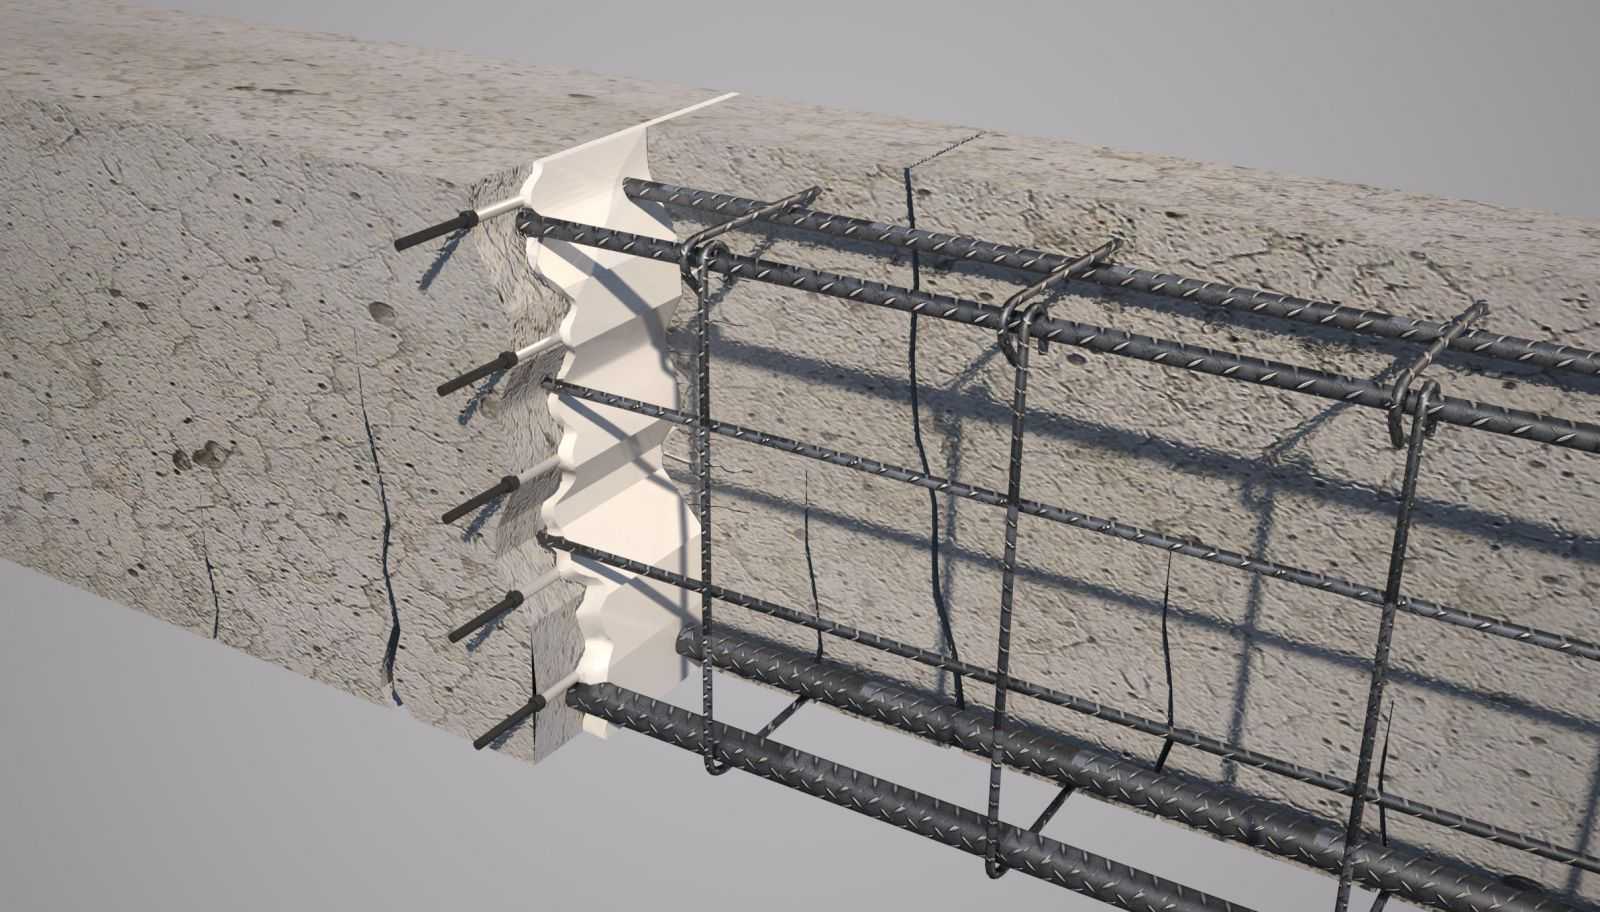 Герметизация швов бетонного пола